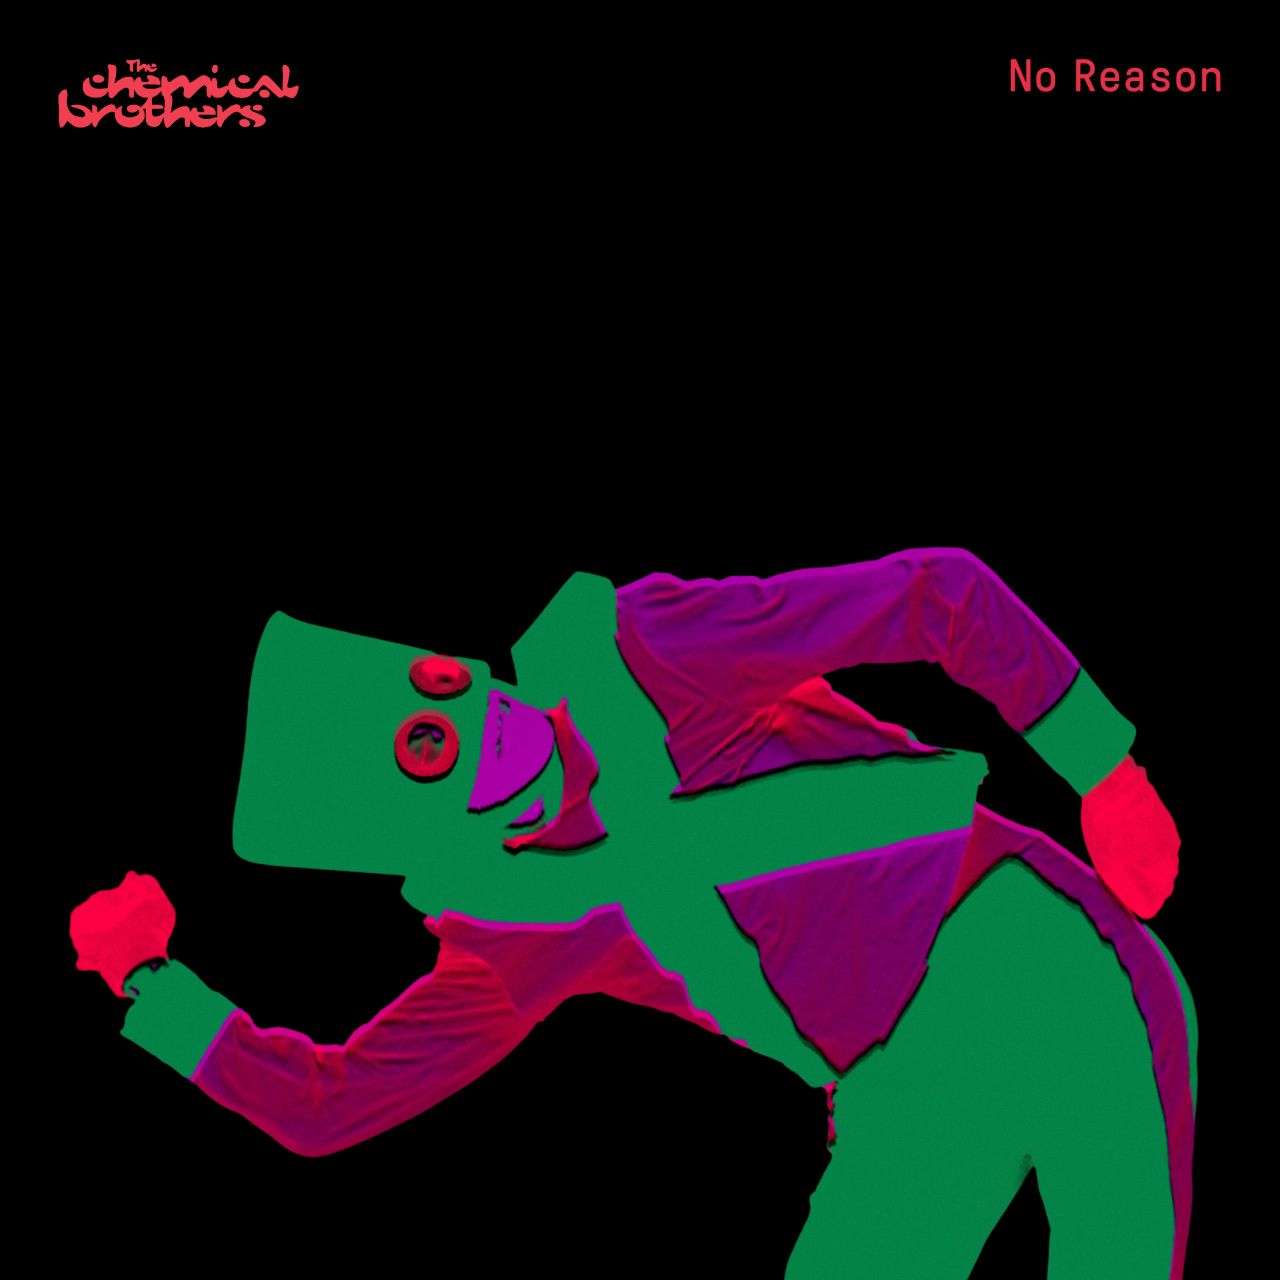 Okładka płyty winylowej artysty Chemical Brothers o tytule No Reason